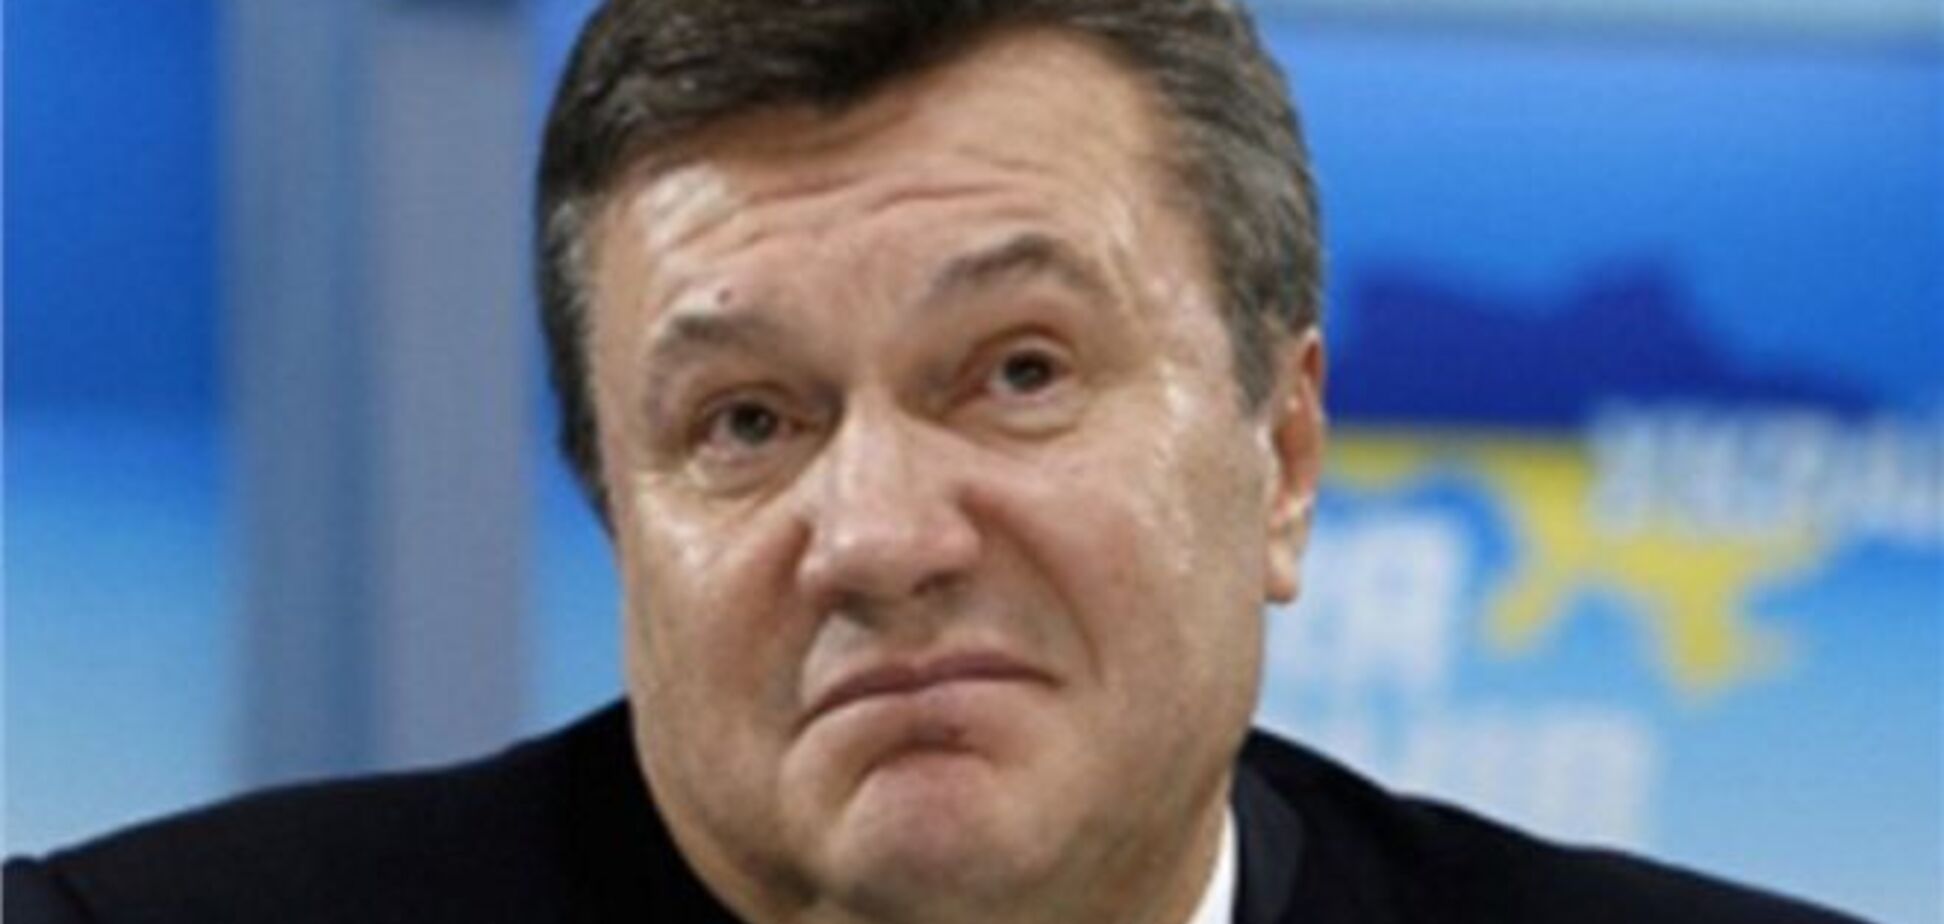 Третина росіян не знає, хто такий Янукович - опитування